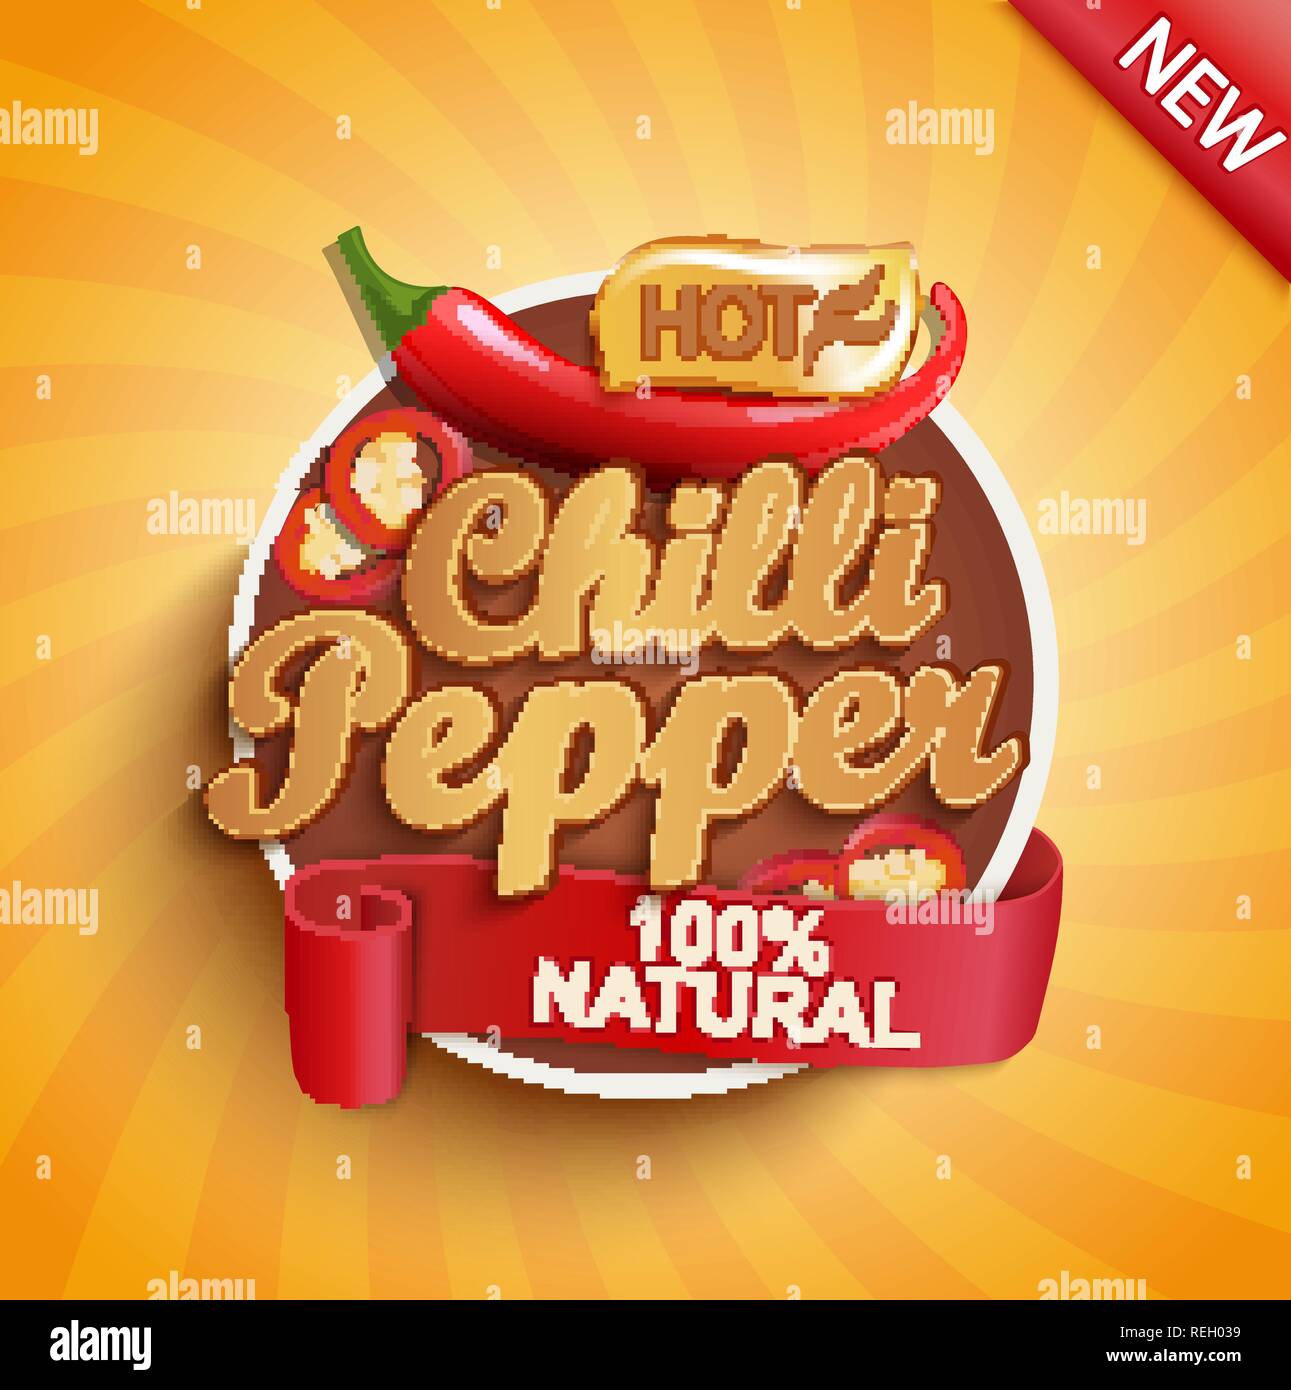 Hot chili pepper logo, étiquette ou étiquette sur fond sunburst. Aliments naturels et biologiques.Concept de légume savoureux pour farmers market, magasins, de l'emballage et les emballages, design publicitaire.Vector illustration. Illustration de Vecteur